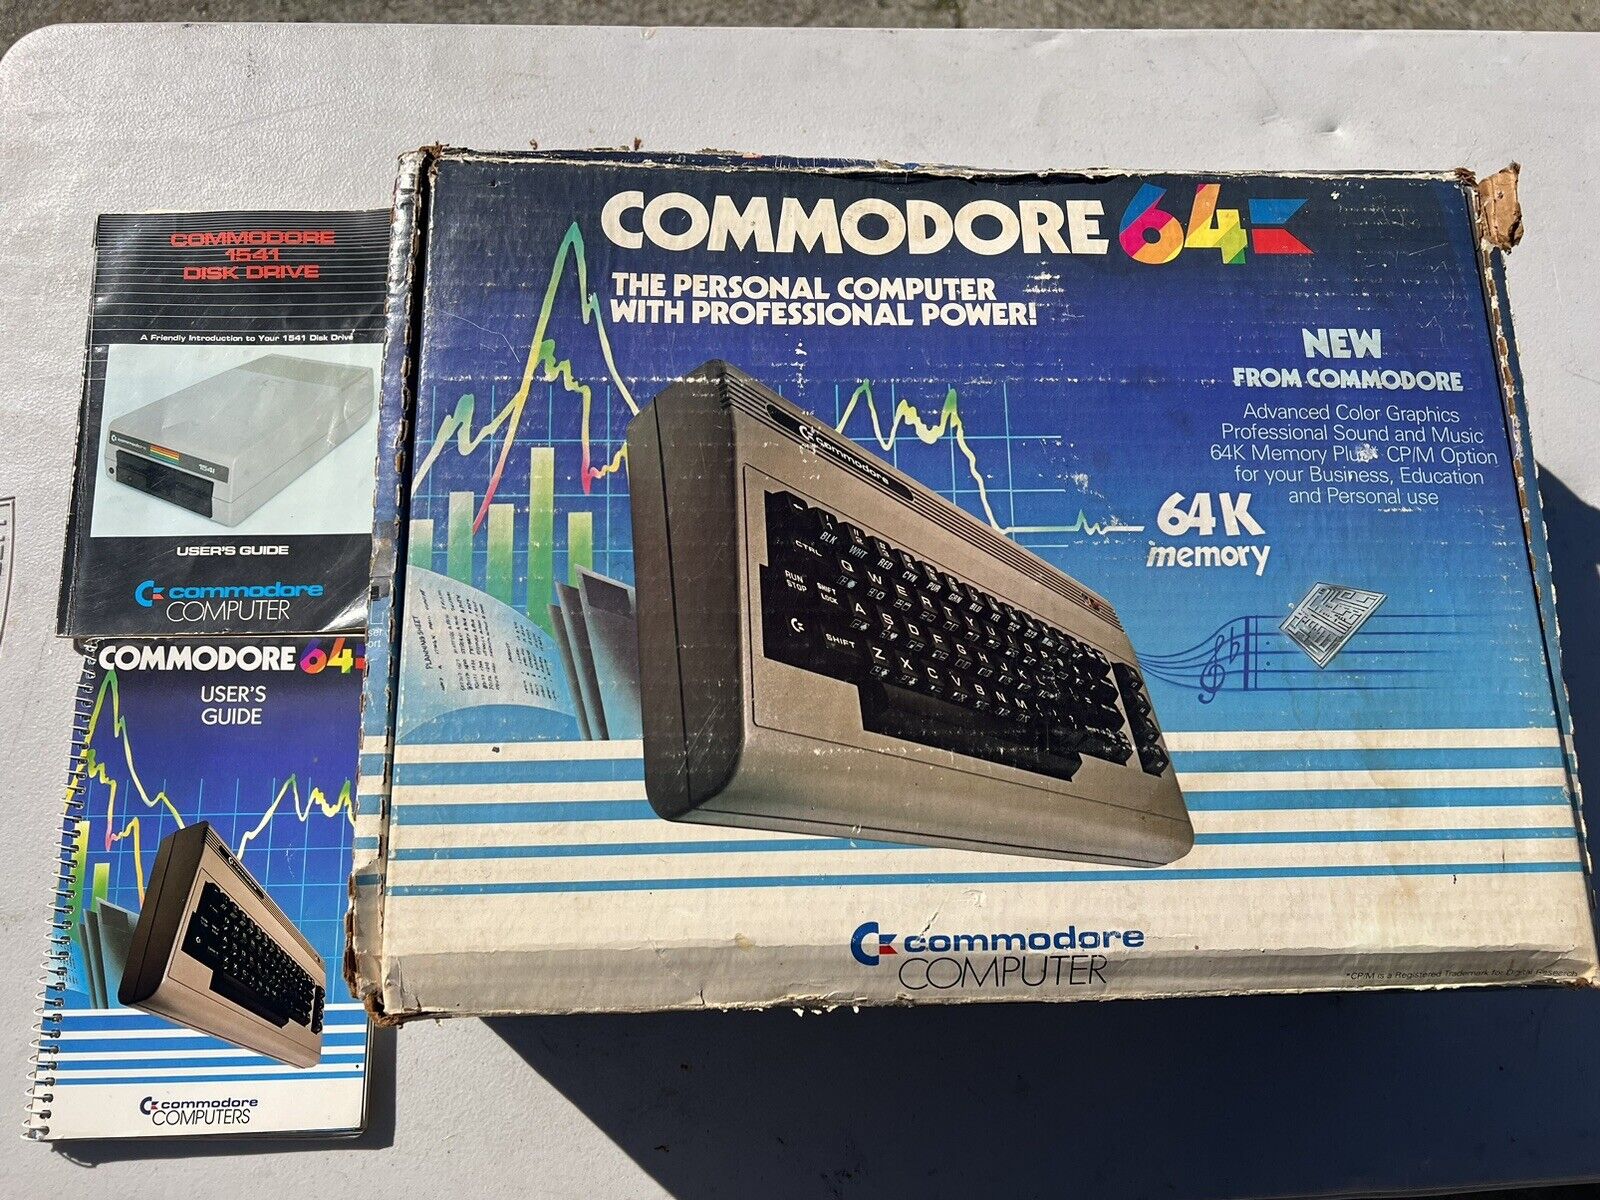 Commodore 64 Computer w/ Original Box